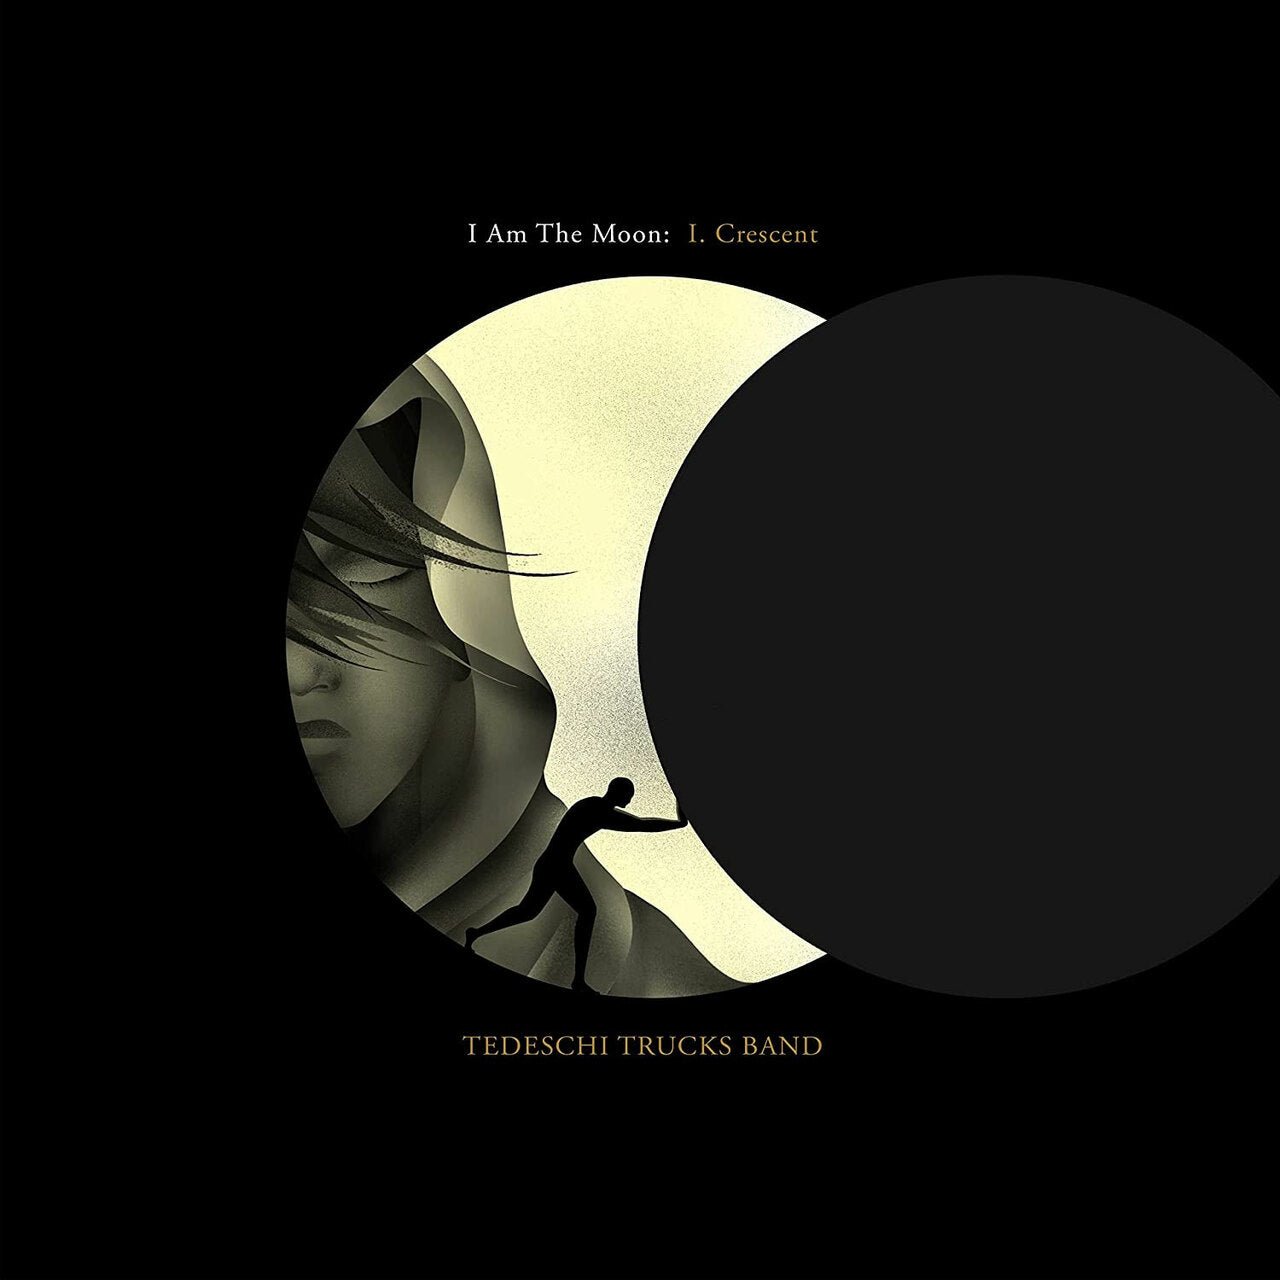 TEDESCHI TRUCKS BAND - I AM THE MOON: I. CRESCENT Vinyl LP